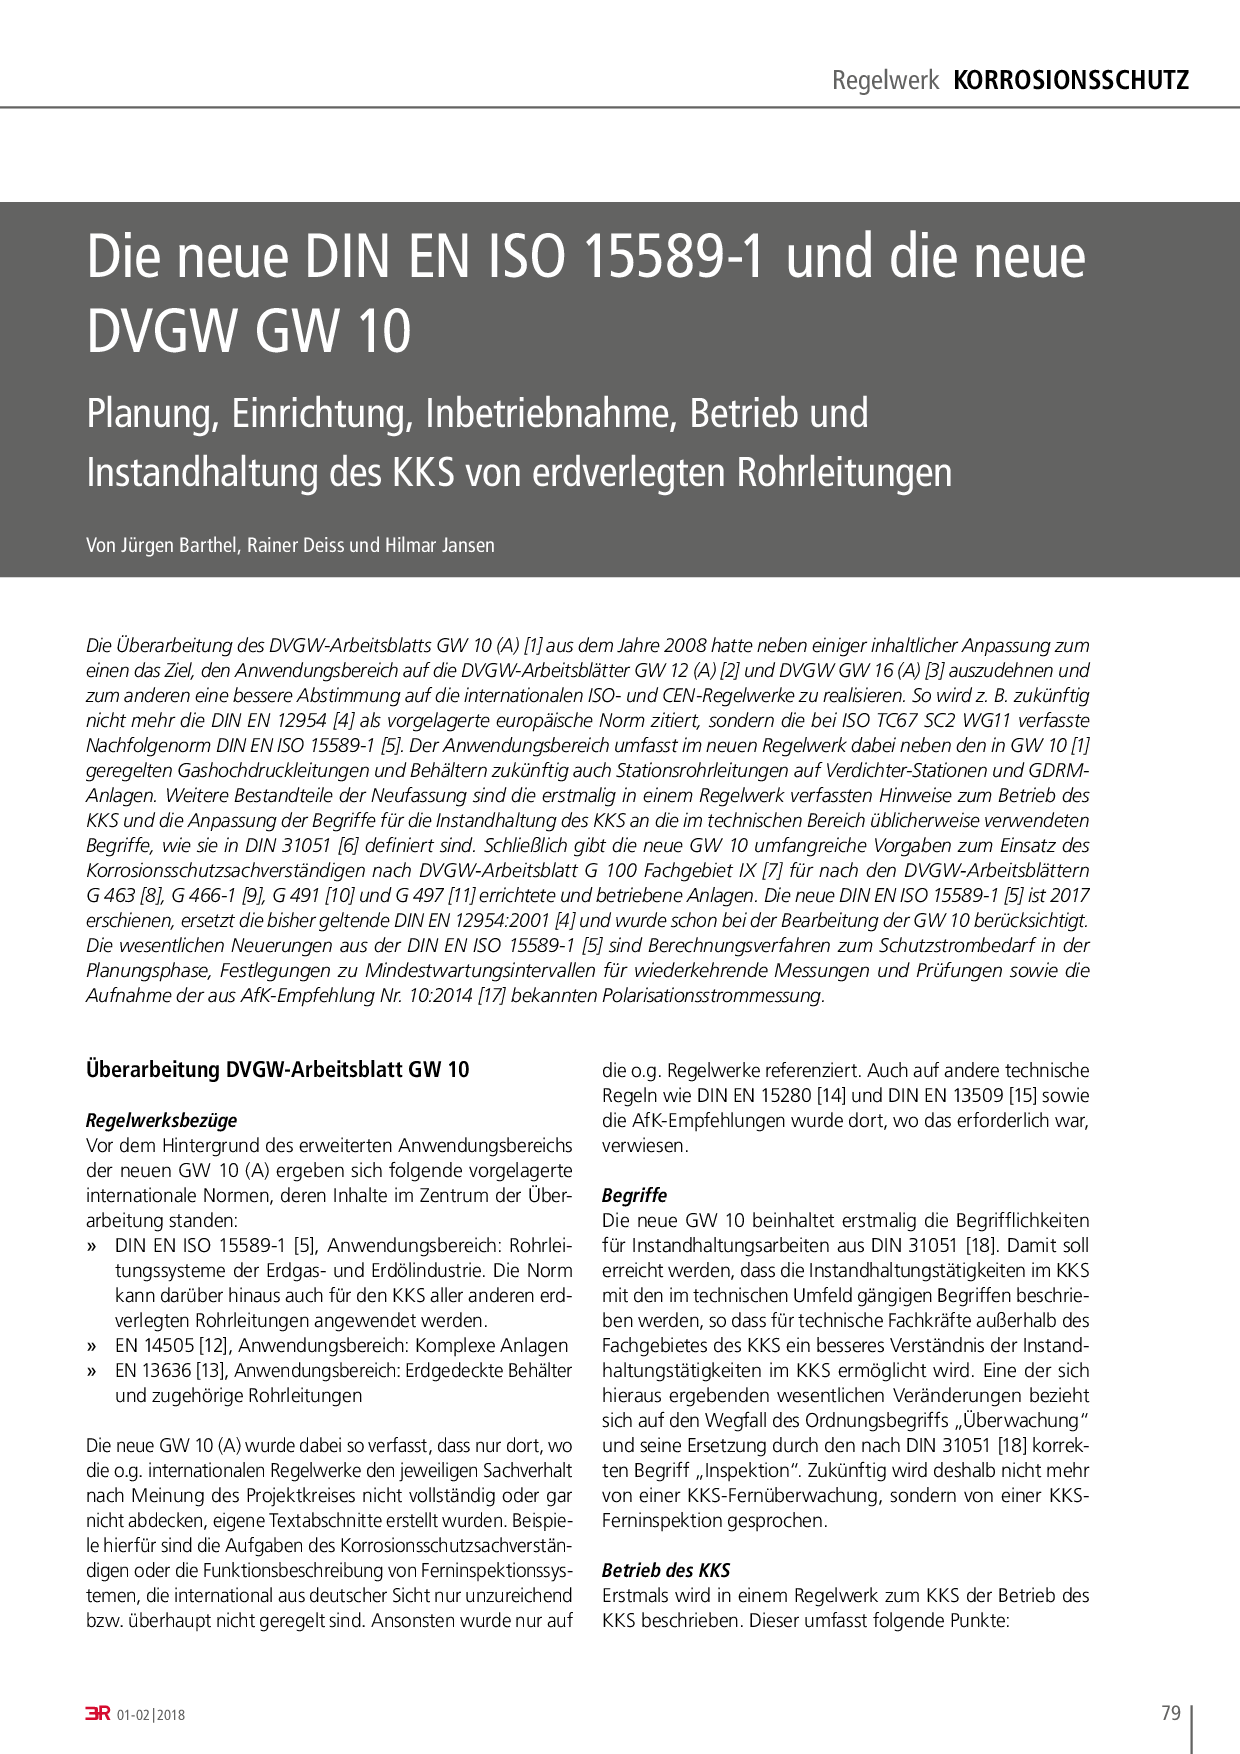 Die neue DIN EN ISO 15589-1 und die neue DVGW GW 10